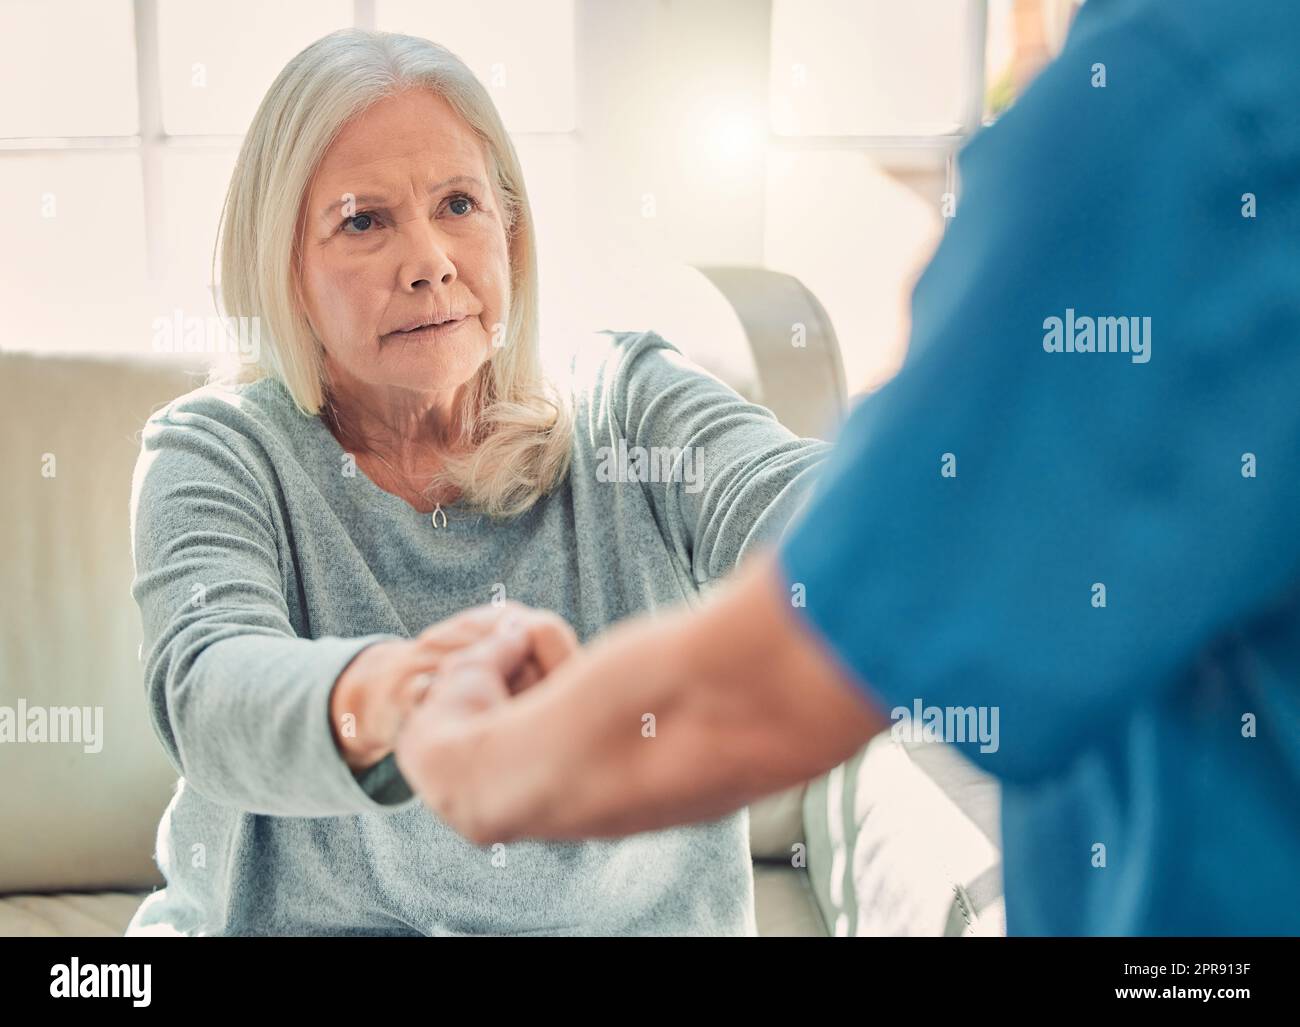 Mitgefühl ist der Wunsch, andere frei von Leiden zu sehen. Eine junge Krankenschwester hilft ihrer älteren Patientin Steh auf. Stockfoto